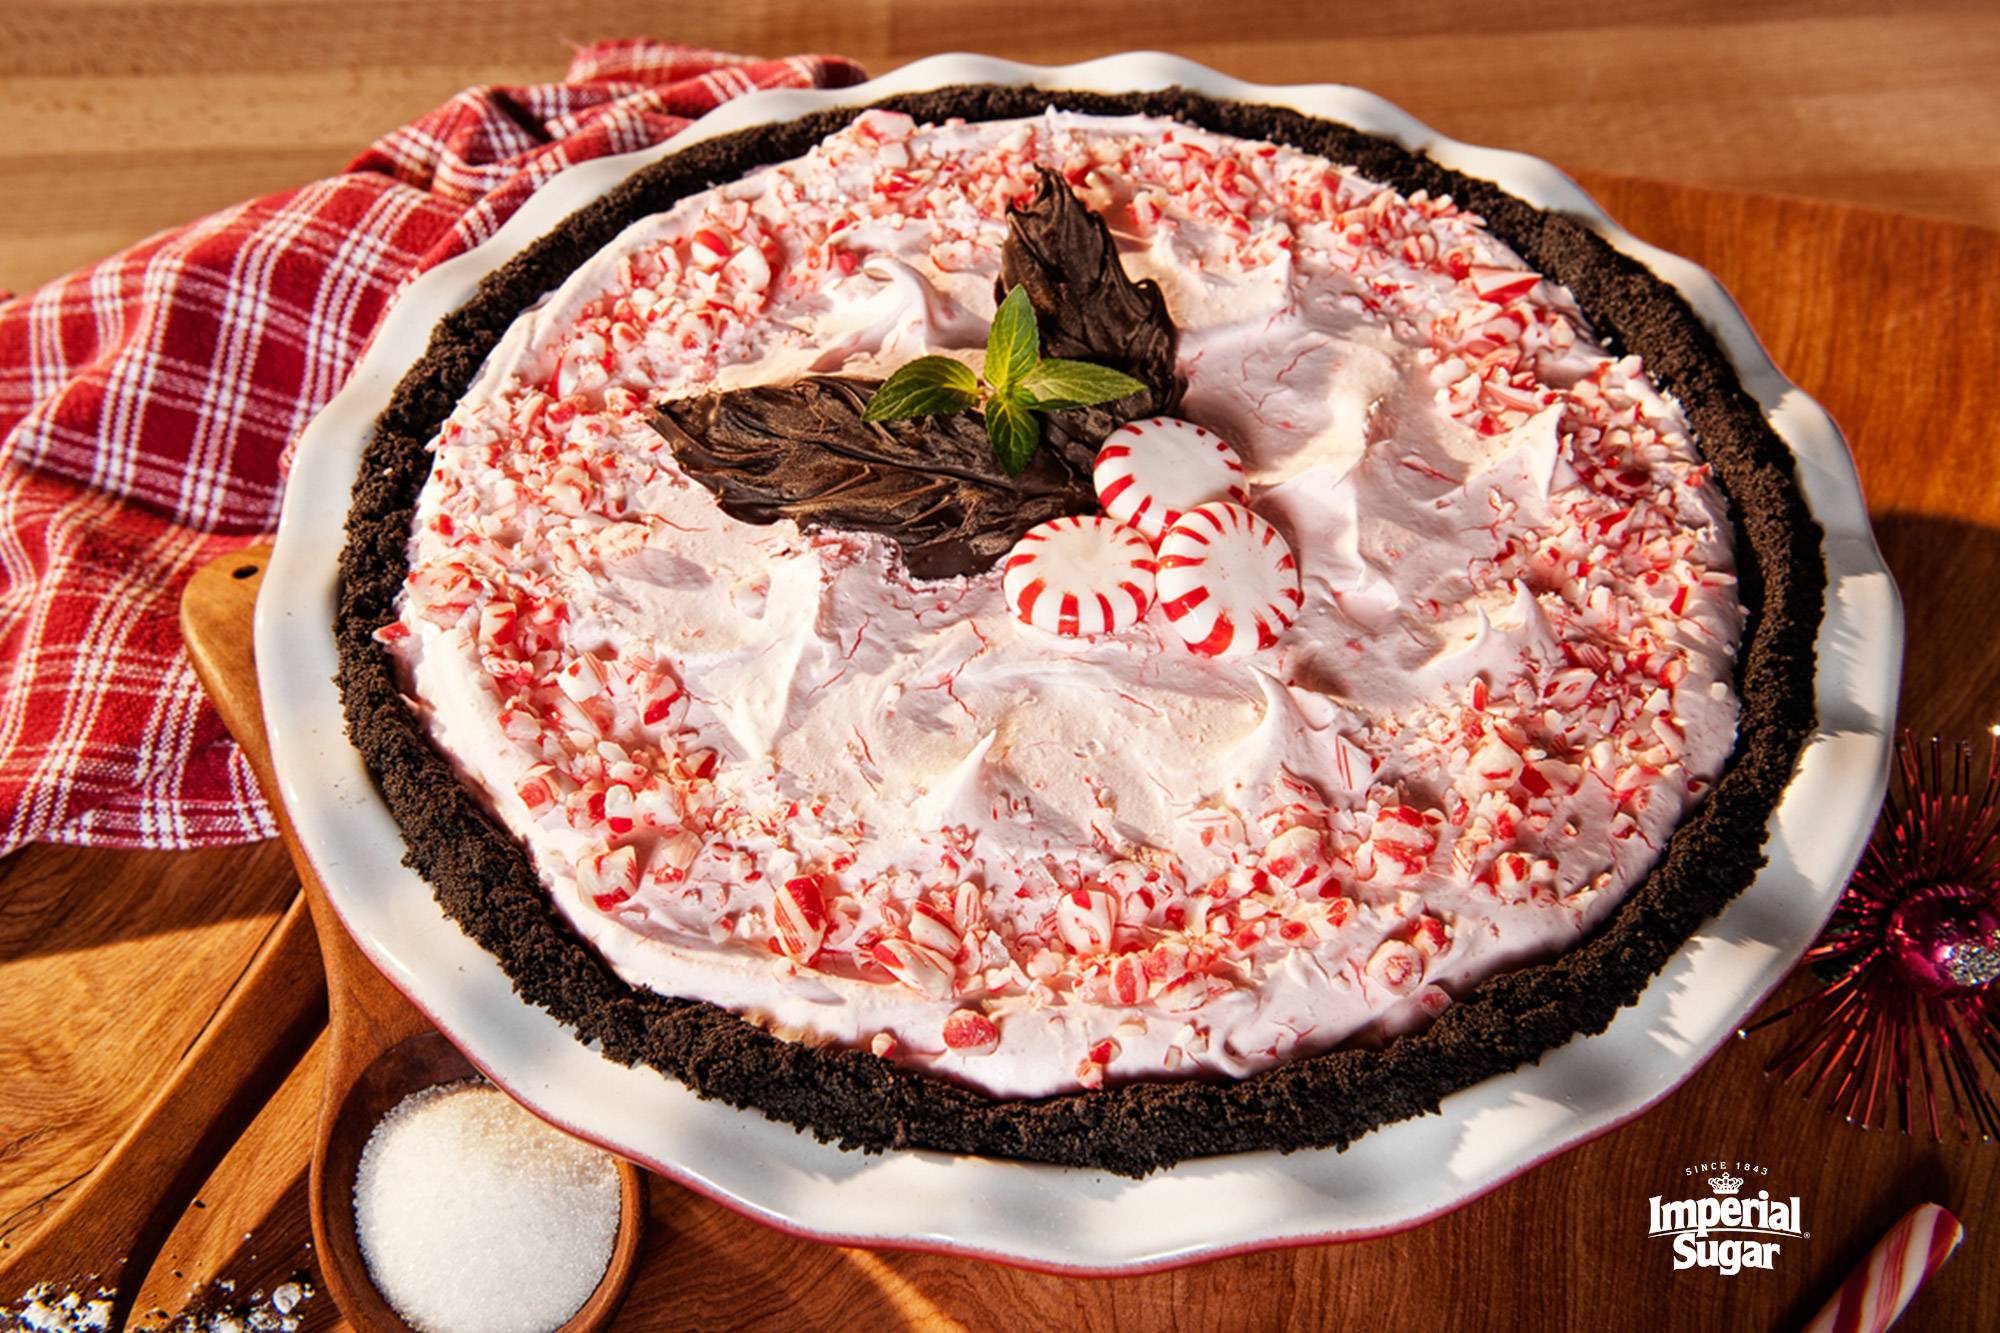 Recipe: Peppermint Red Velvet Cake Roll | The Kitchn